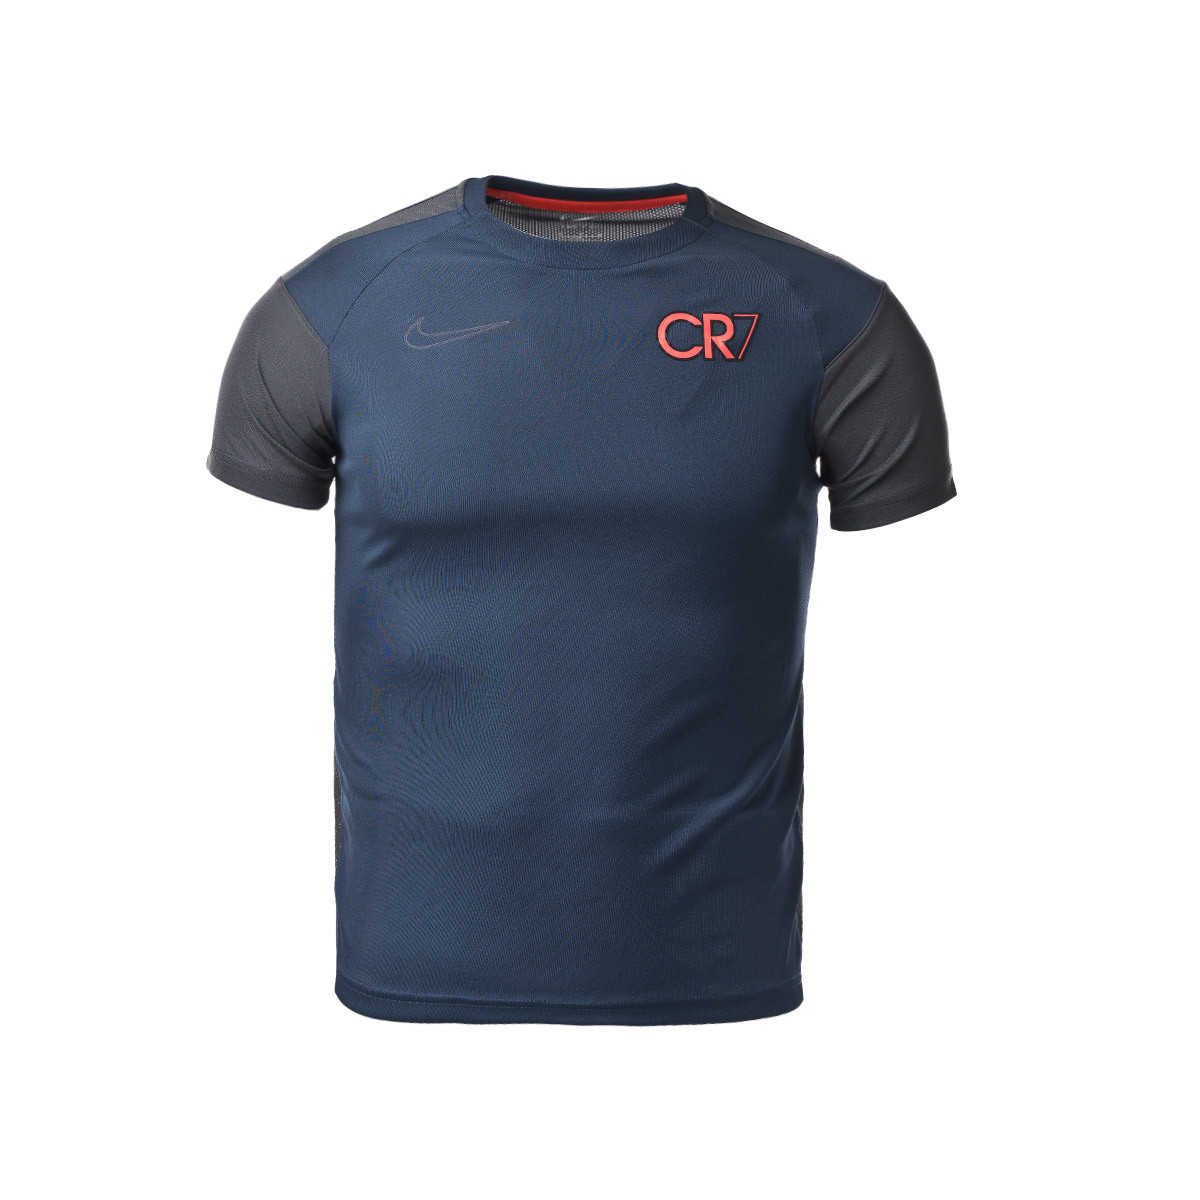 internacional George Hanbury Mamut Camiseta Nike CR7 Niño Armony Navy - Fútbol Emotion